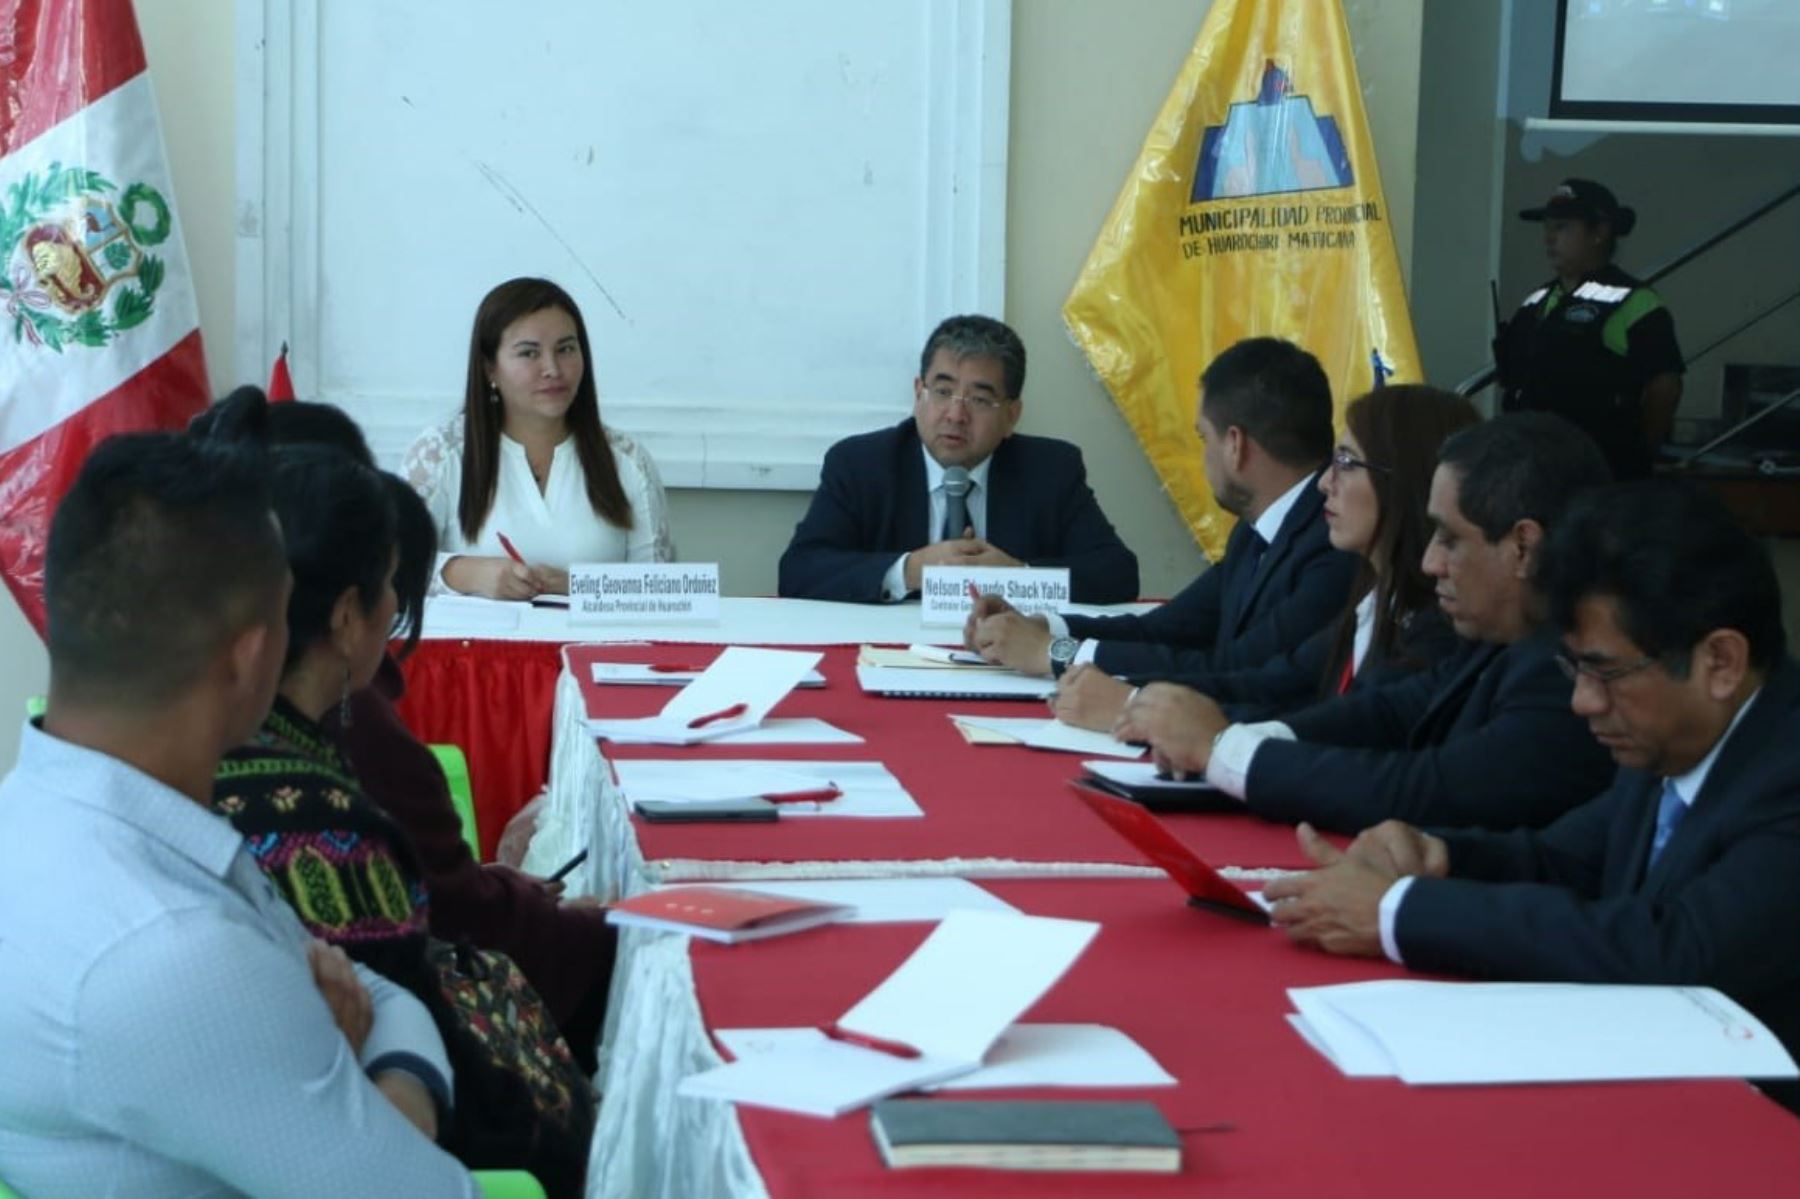 Contraloría efectuará en junio operativo para fiscalizar seguridad ciudadana en comisarías, anunció su titular Nelson Shack, en su visita de trabajo a la provincia de Huarochirí.